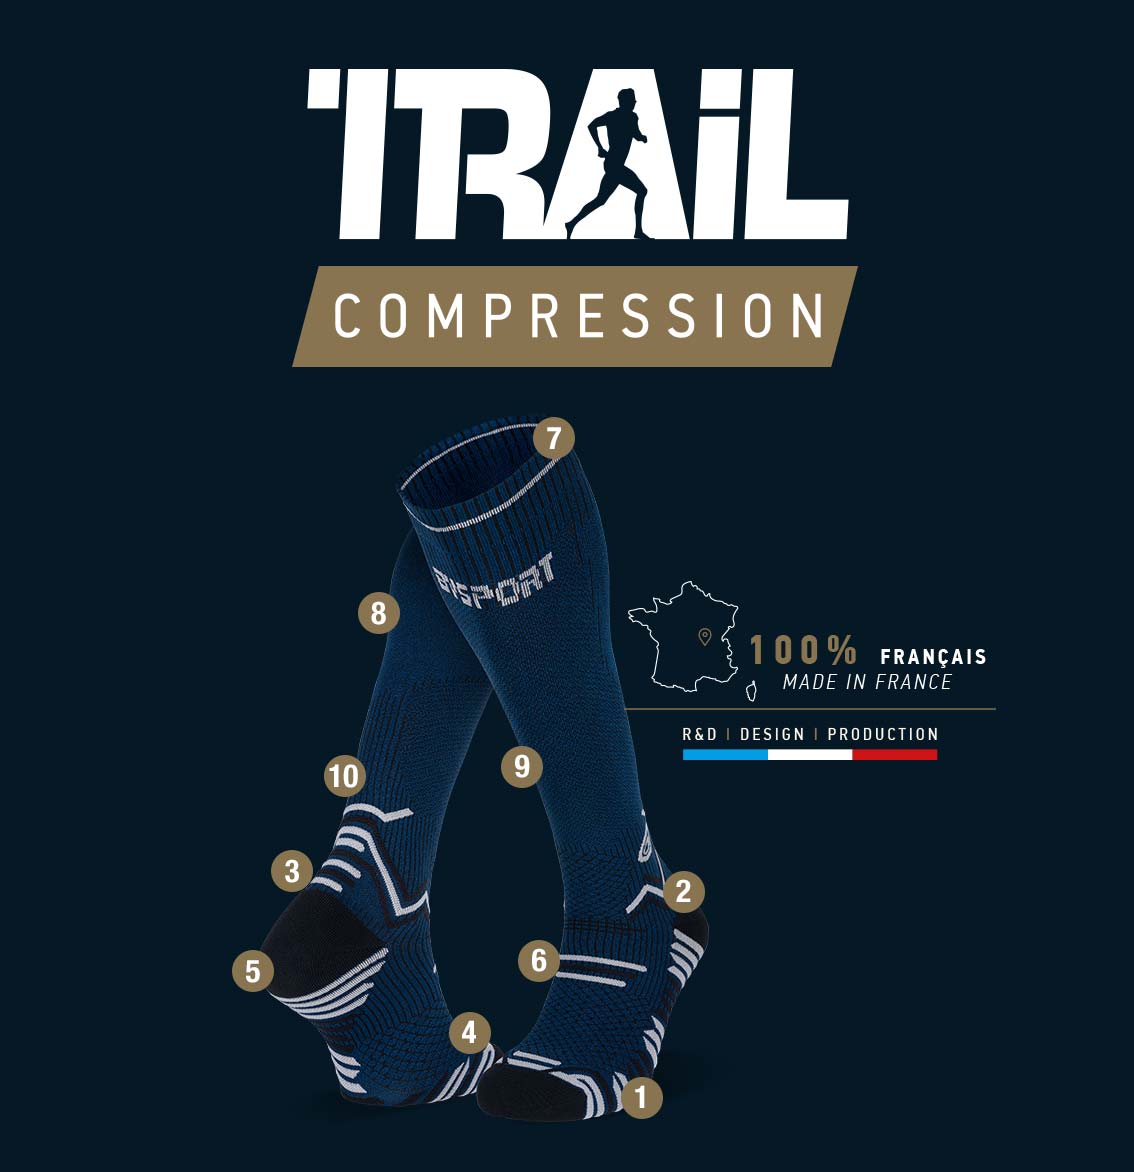 Chaussettes_trail_compression_bleu-noir